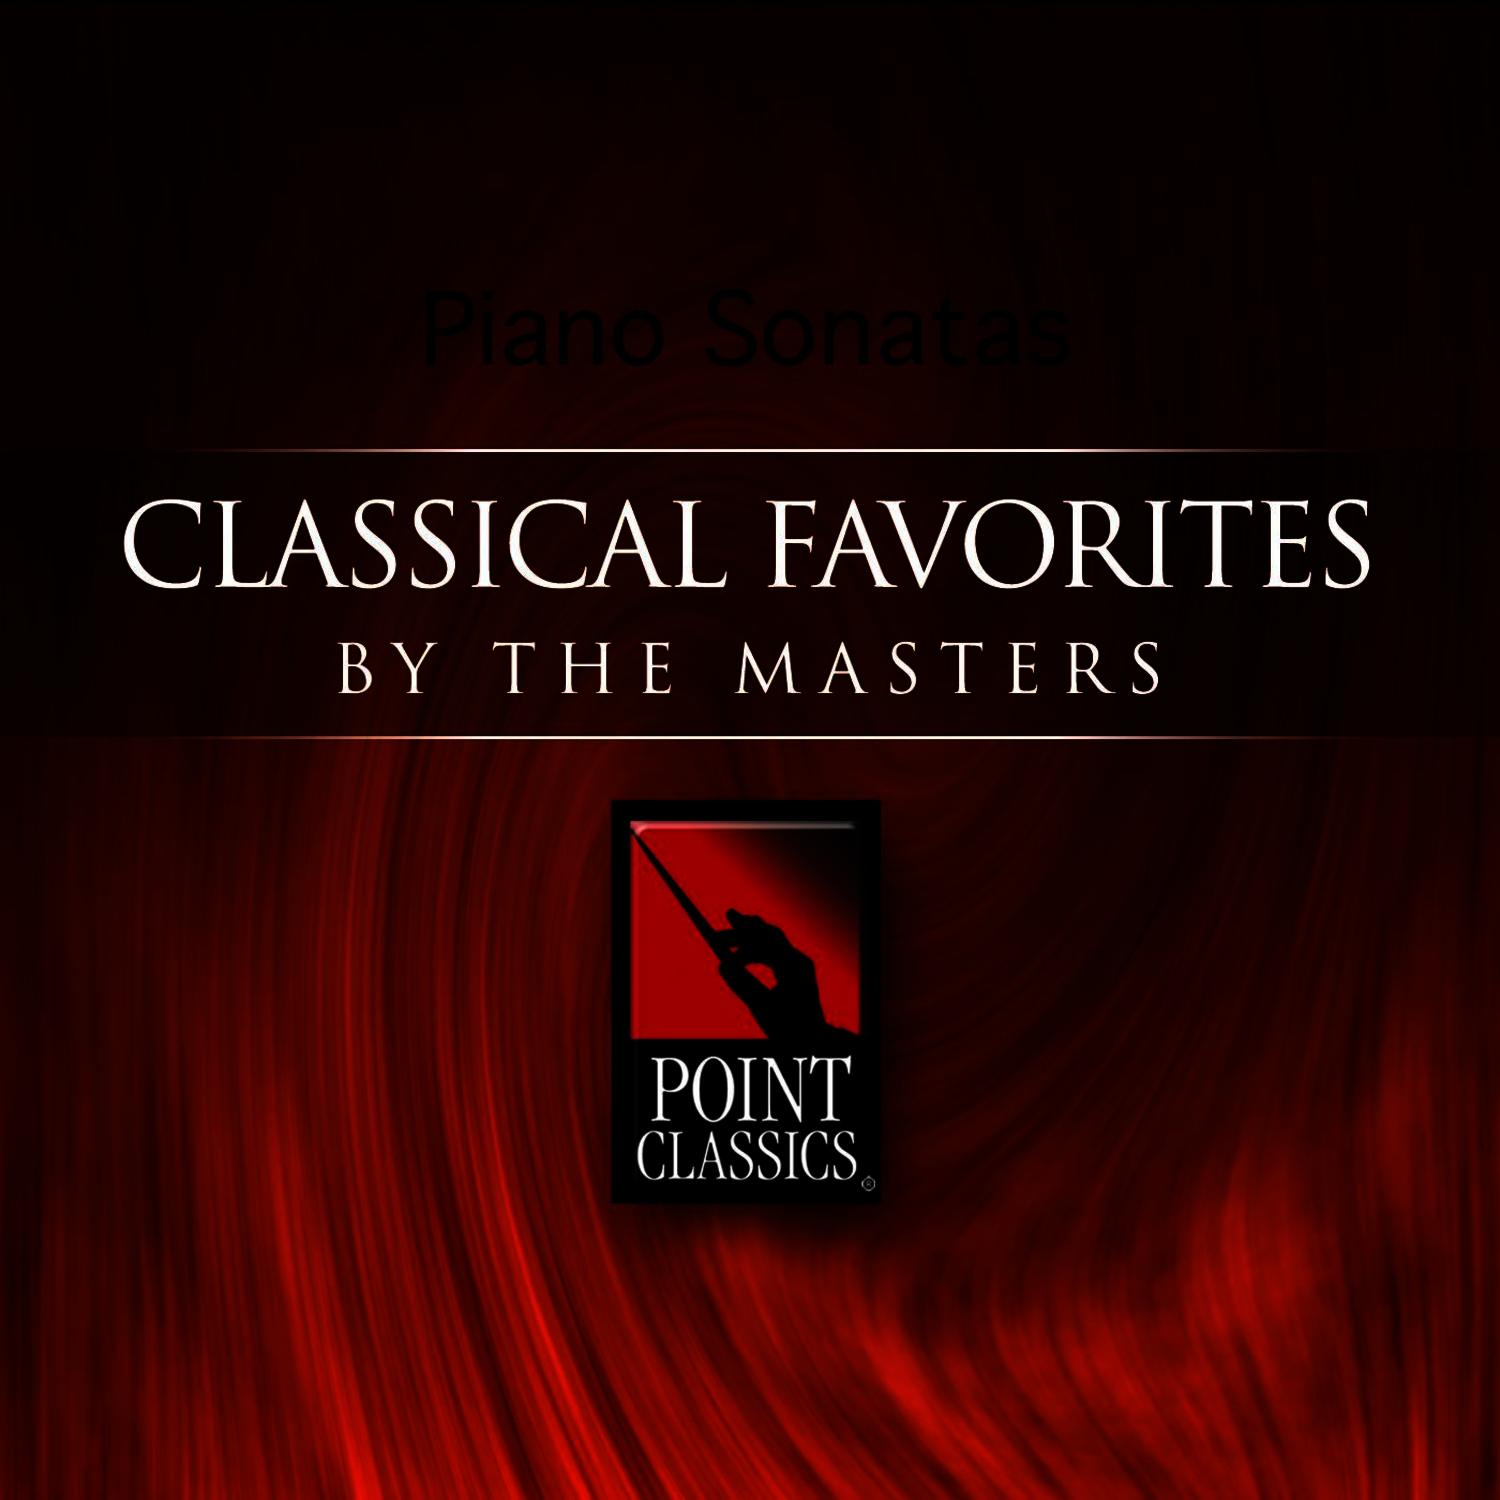 Sonata in G Major, L. 387